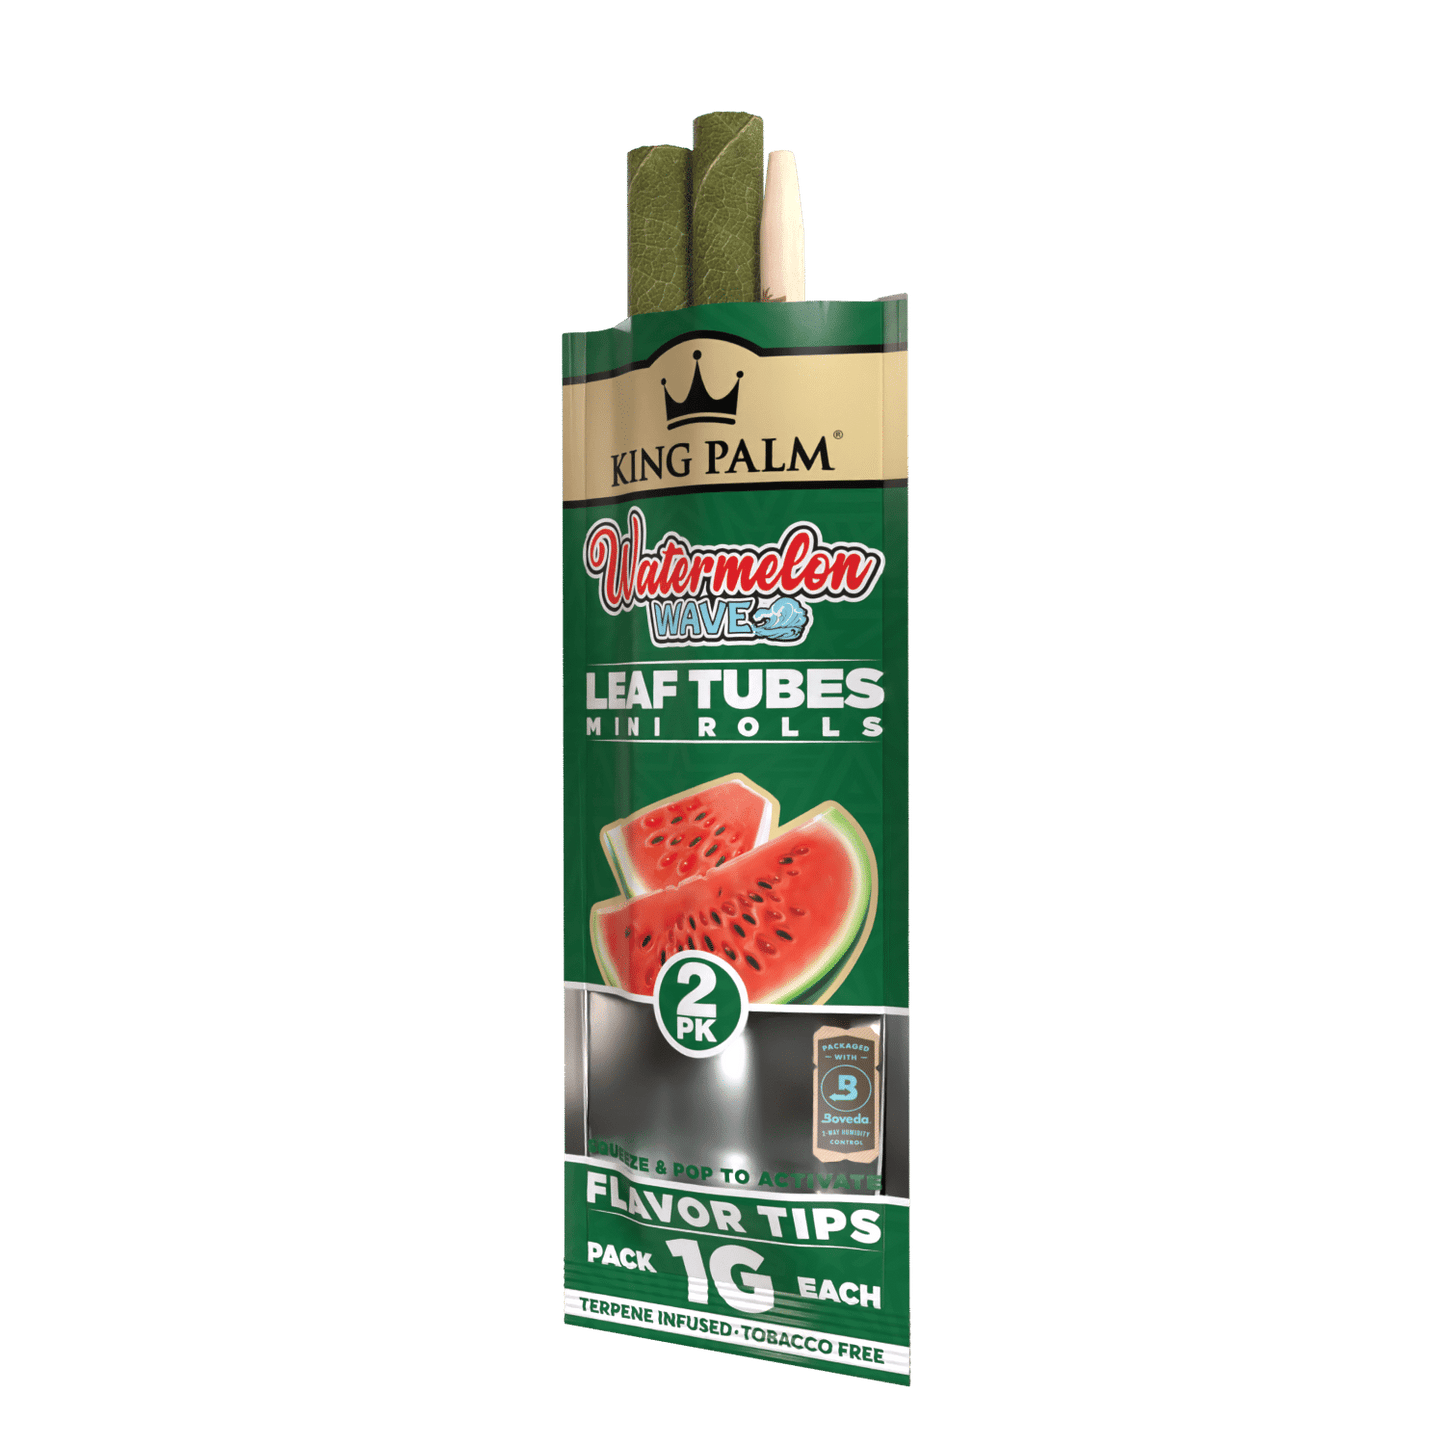 King Palm 2 Mini Rolls – Watermelon Wave Best Sales Price - Pre-Rolls